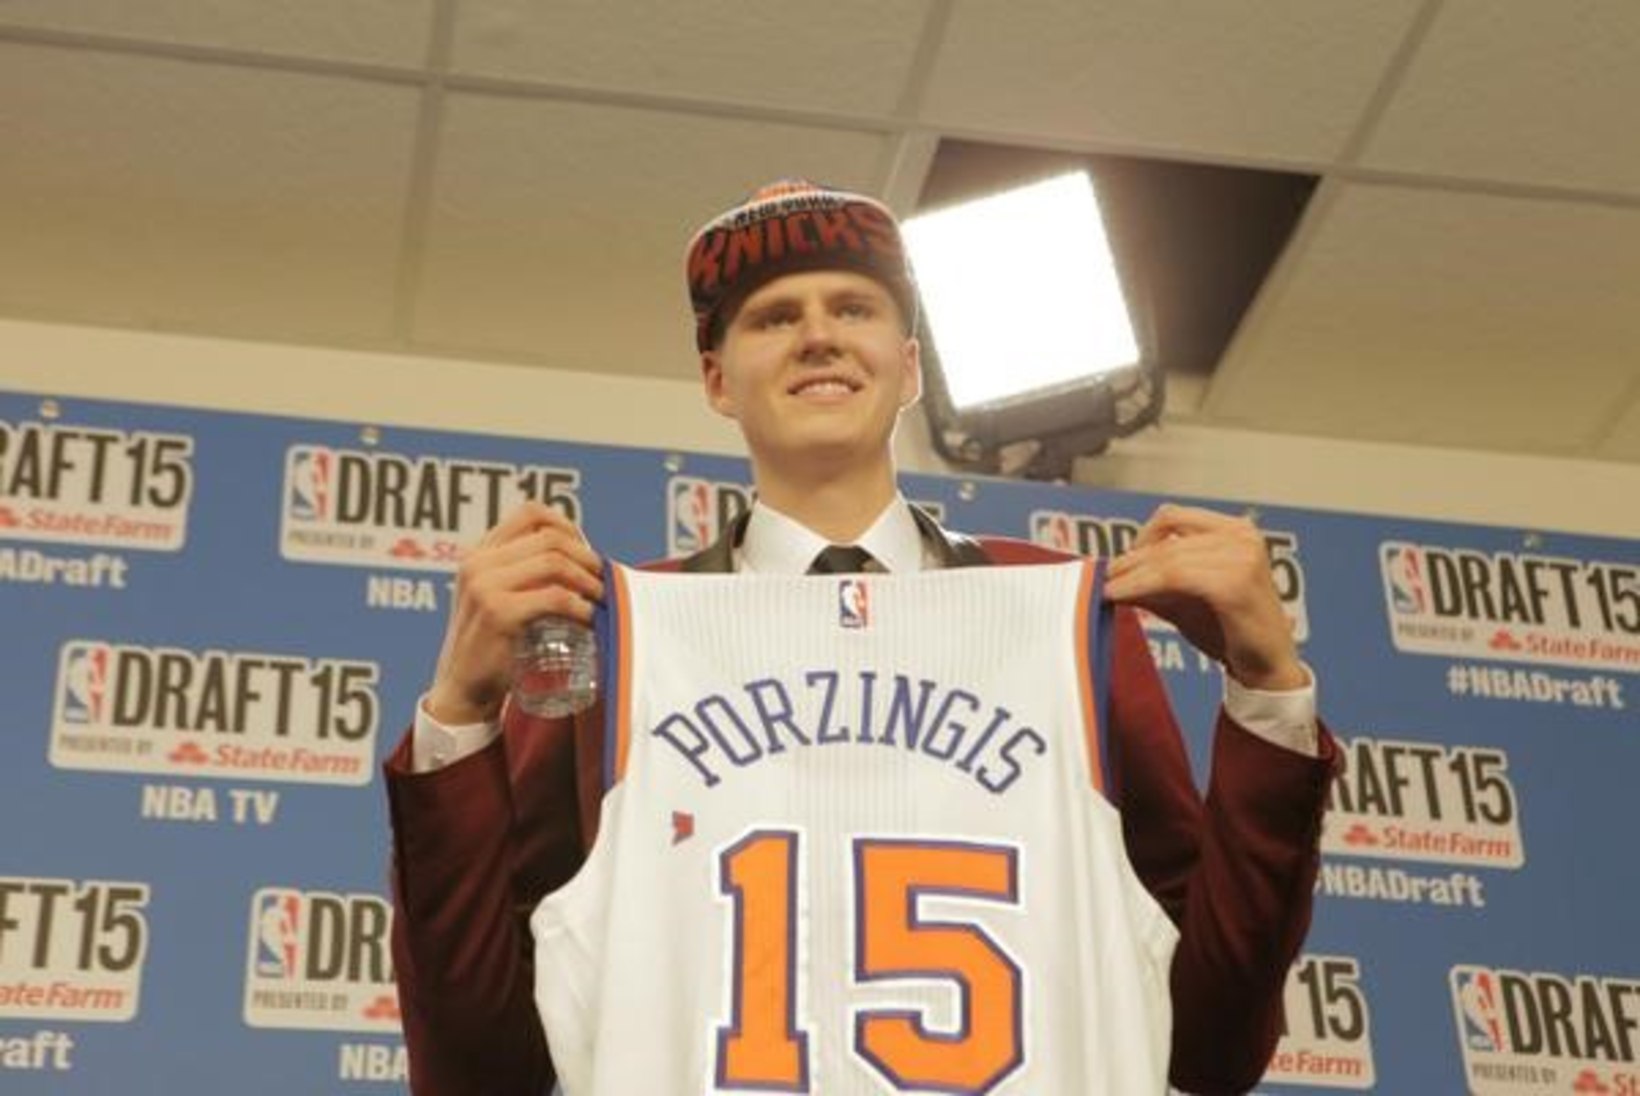 Teadaolevalt ainsa eestlasena 216cm pikkuse NBA drafti neljanda valiku Kristaps Porzingisega koos mänginu: nooruses pidi ta tagamehena mängima